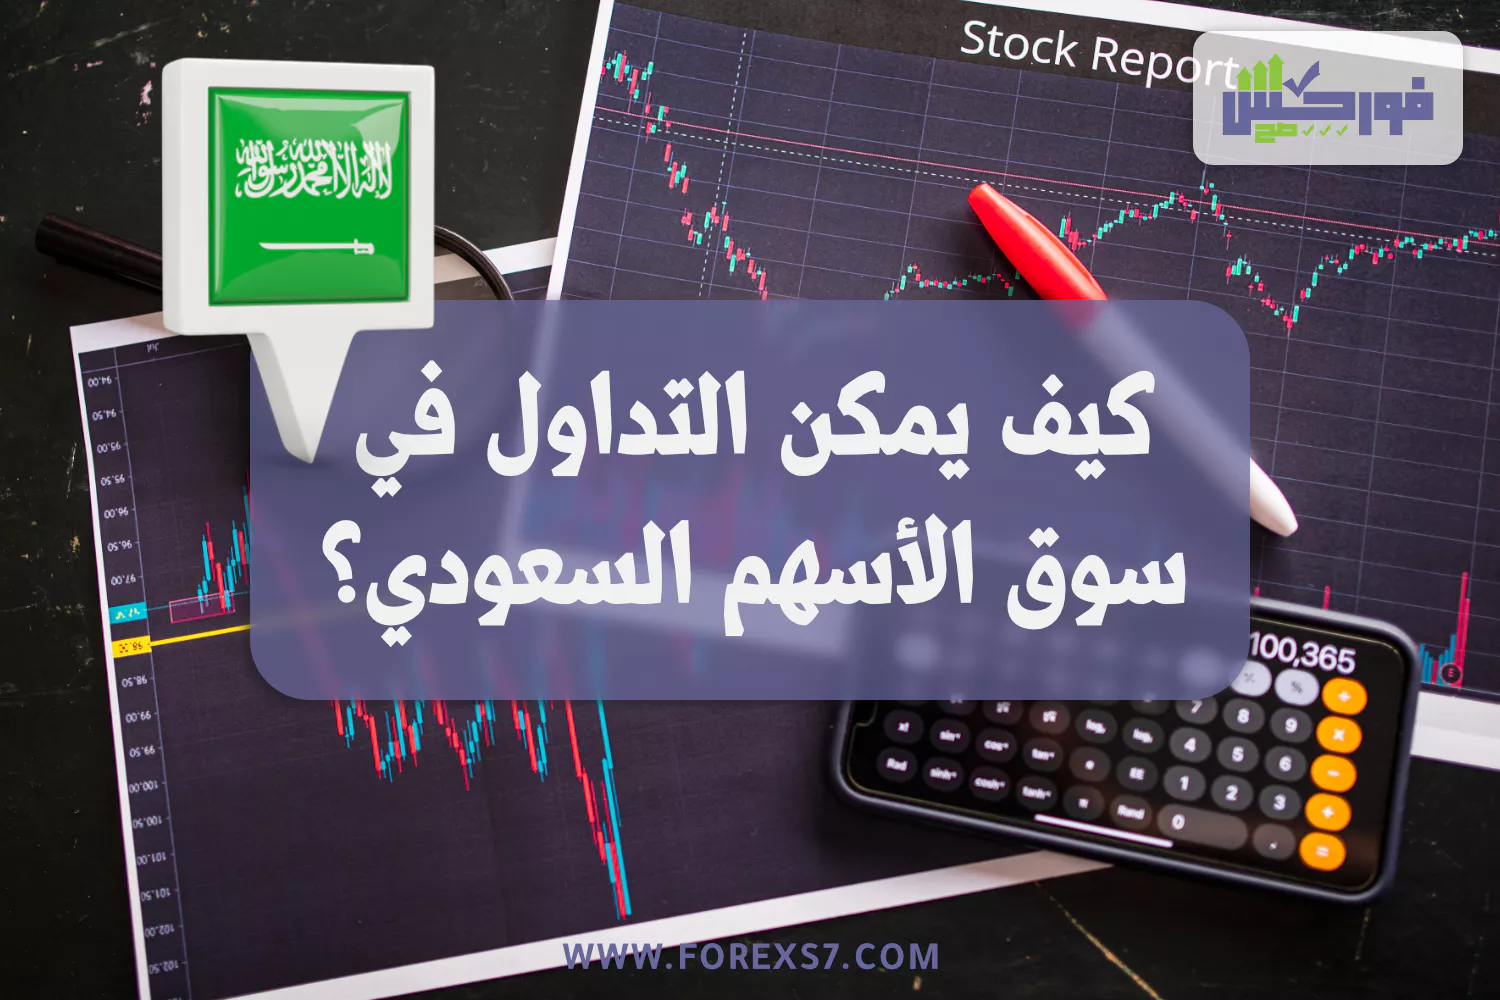 كيف يمكن التداول في سوق الأسهم السعودي ؟